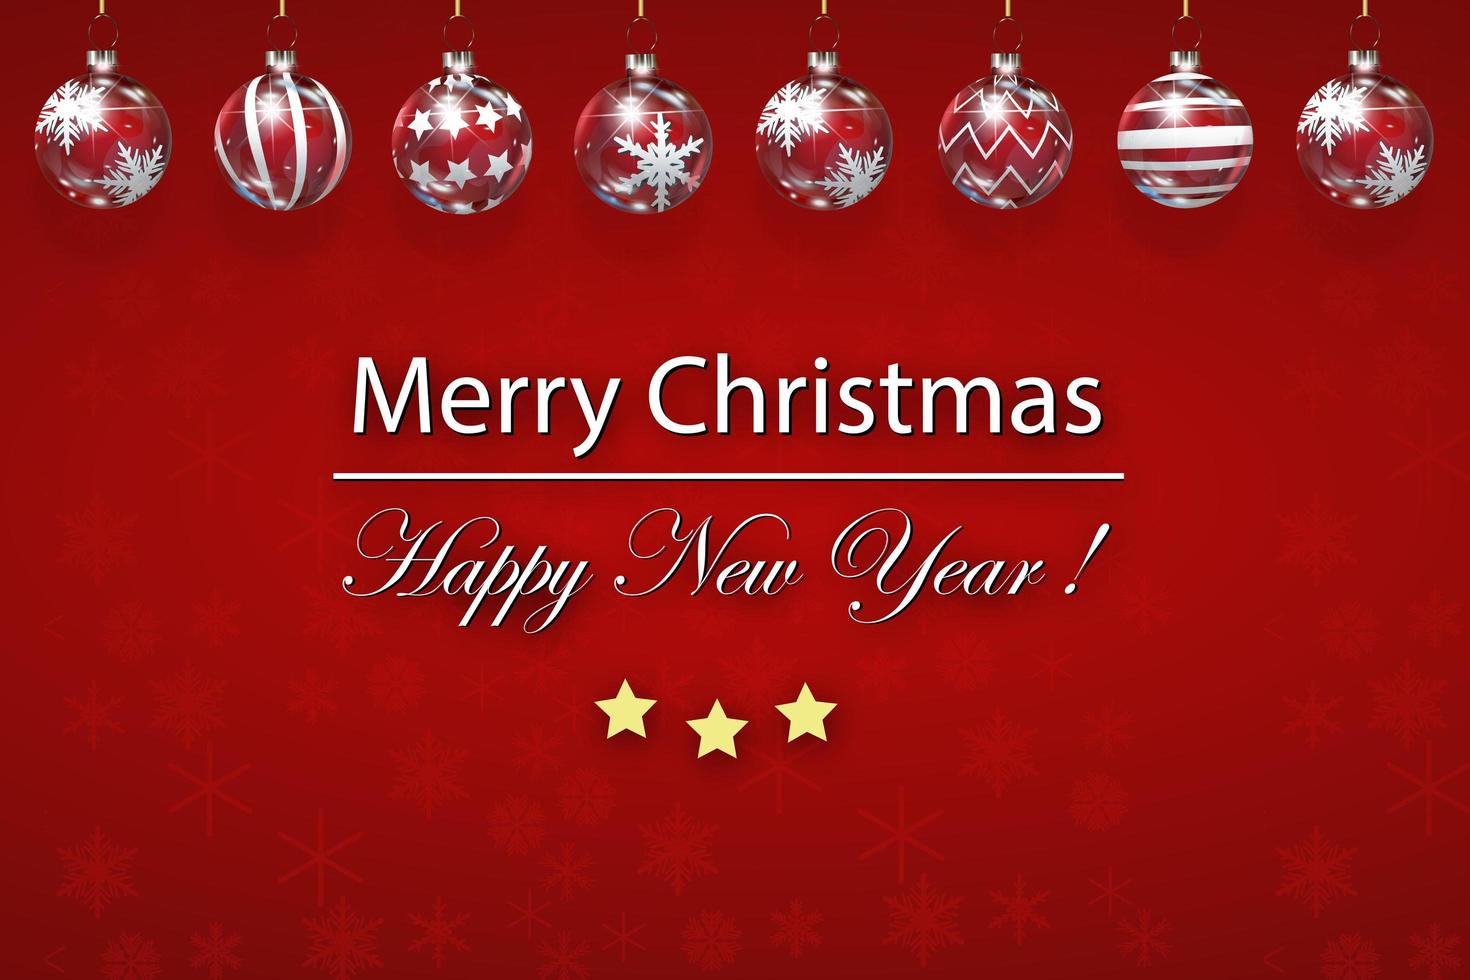 Neujahrs- und Weihnachtsgrüße mit leuchtend roten Schneeflocken Weihnachtsbaum Glaskugeln. frohe weihnachten kartenillustration auf rotem hintergrund. funkelnde rote Schneeflocken mit glänzender Textur vektor